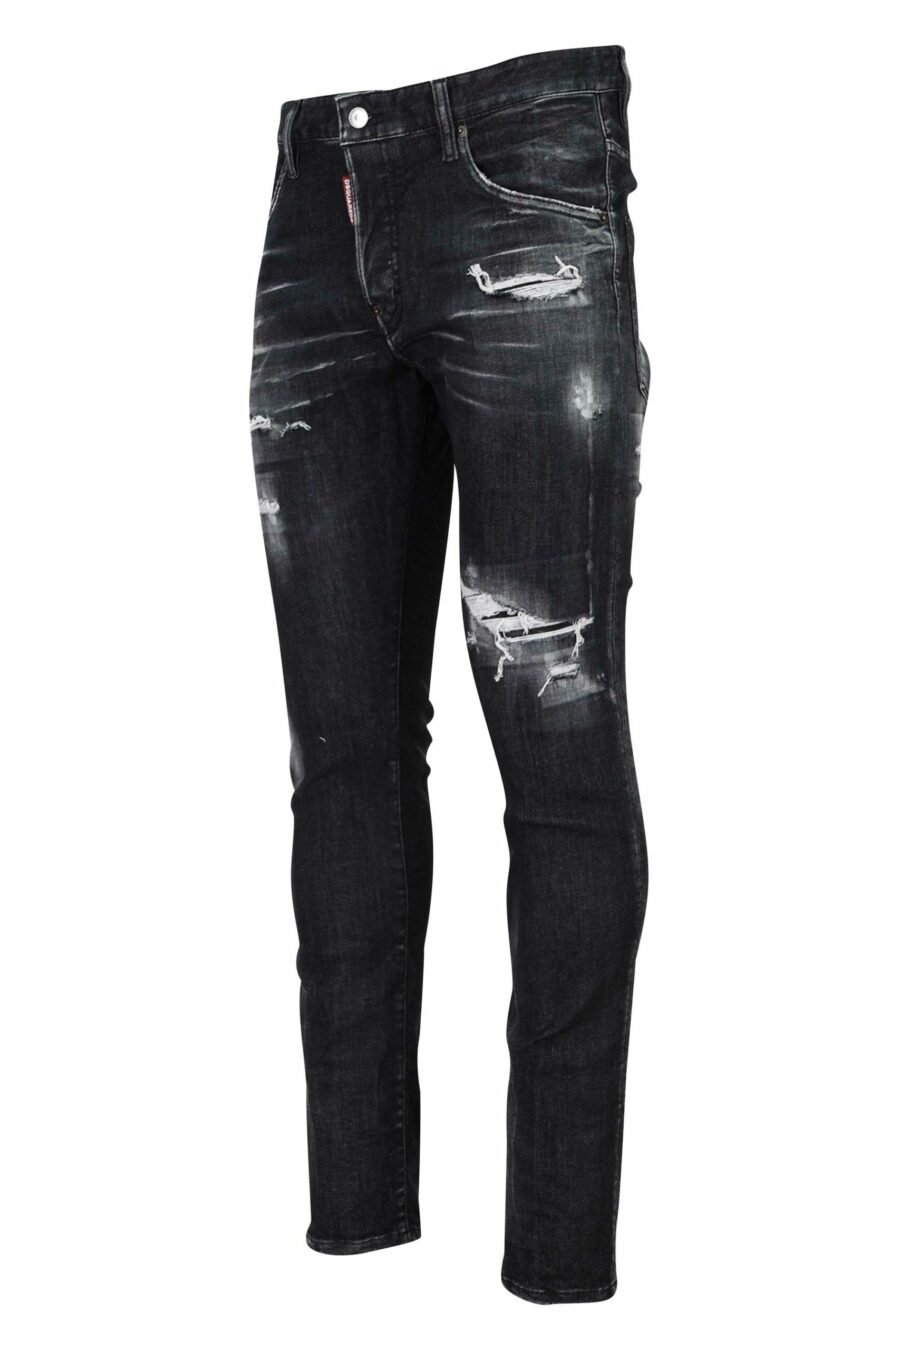 Pantalon Skater jean noir déchiré et semi-usé - 8054148101411 1 échelle